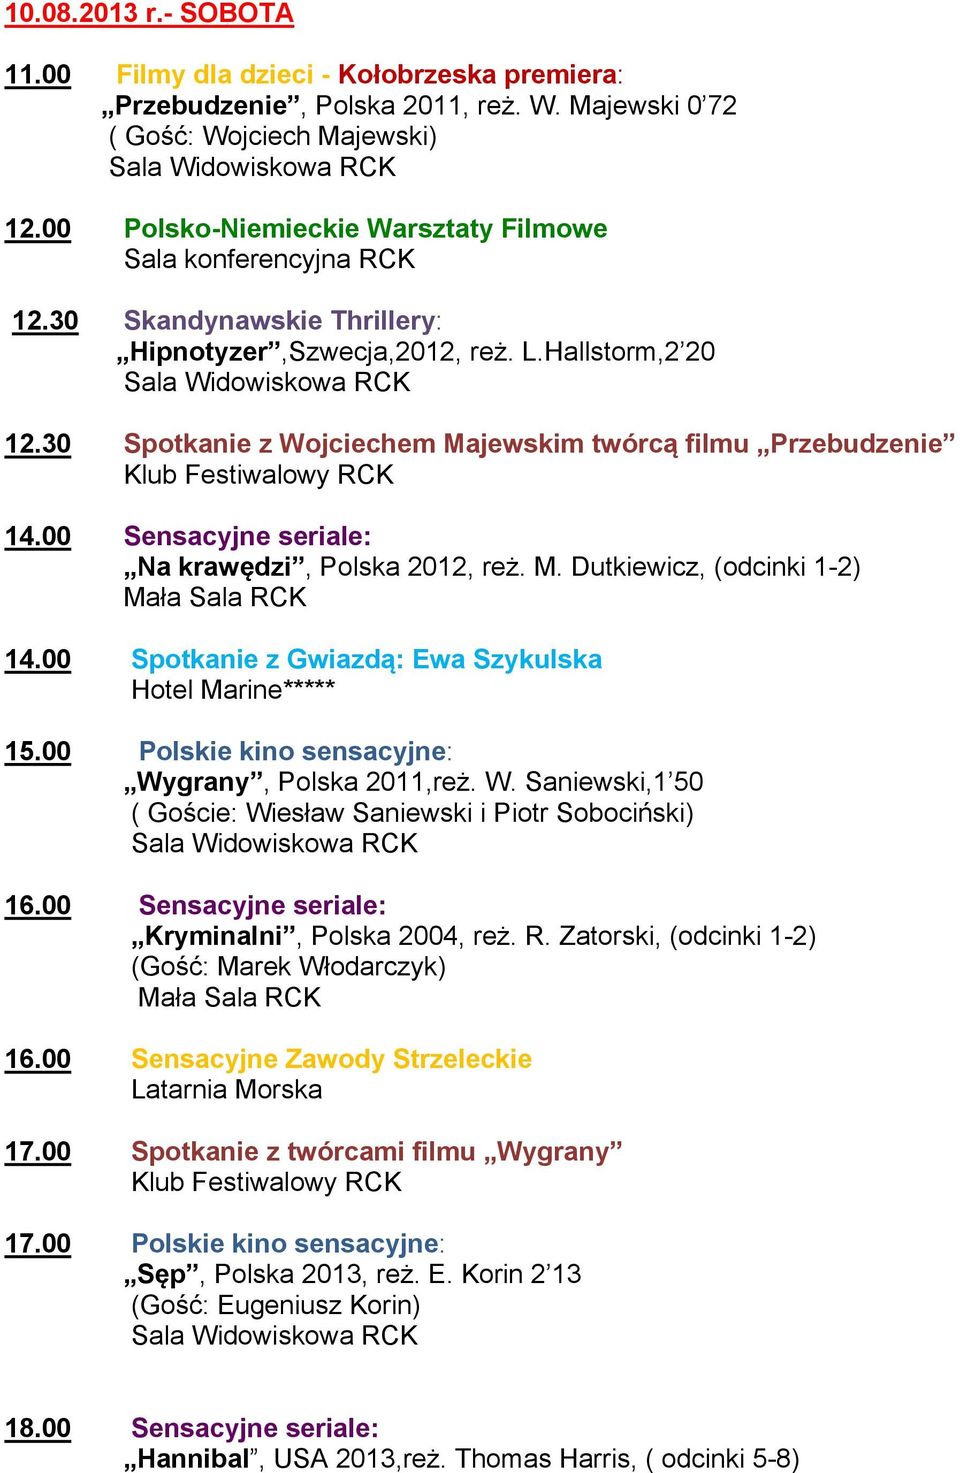 00 Spotkanie z Gwiazdą: Ewa Szykulska 15.00 Polskie kino sensacyjne: Wygrany, Polska 2011,reż. W. Saniewski,1 50 ( Goście: Wiesław Saniewski i Piotr Sobociński) 16.